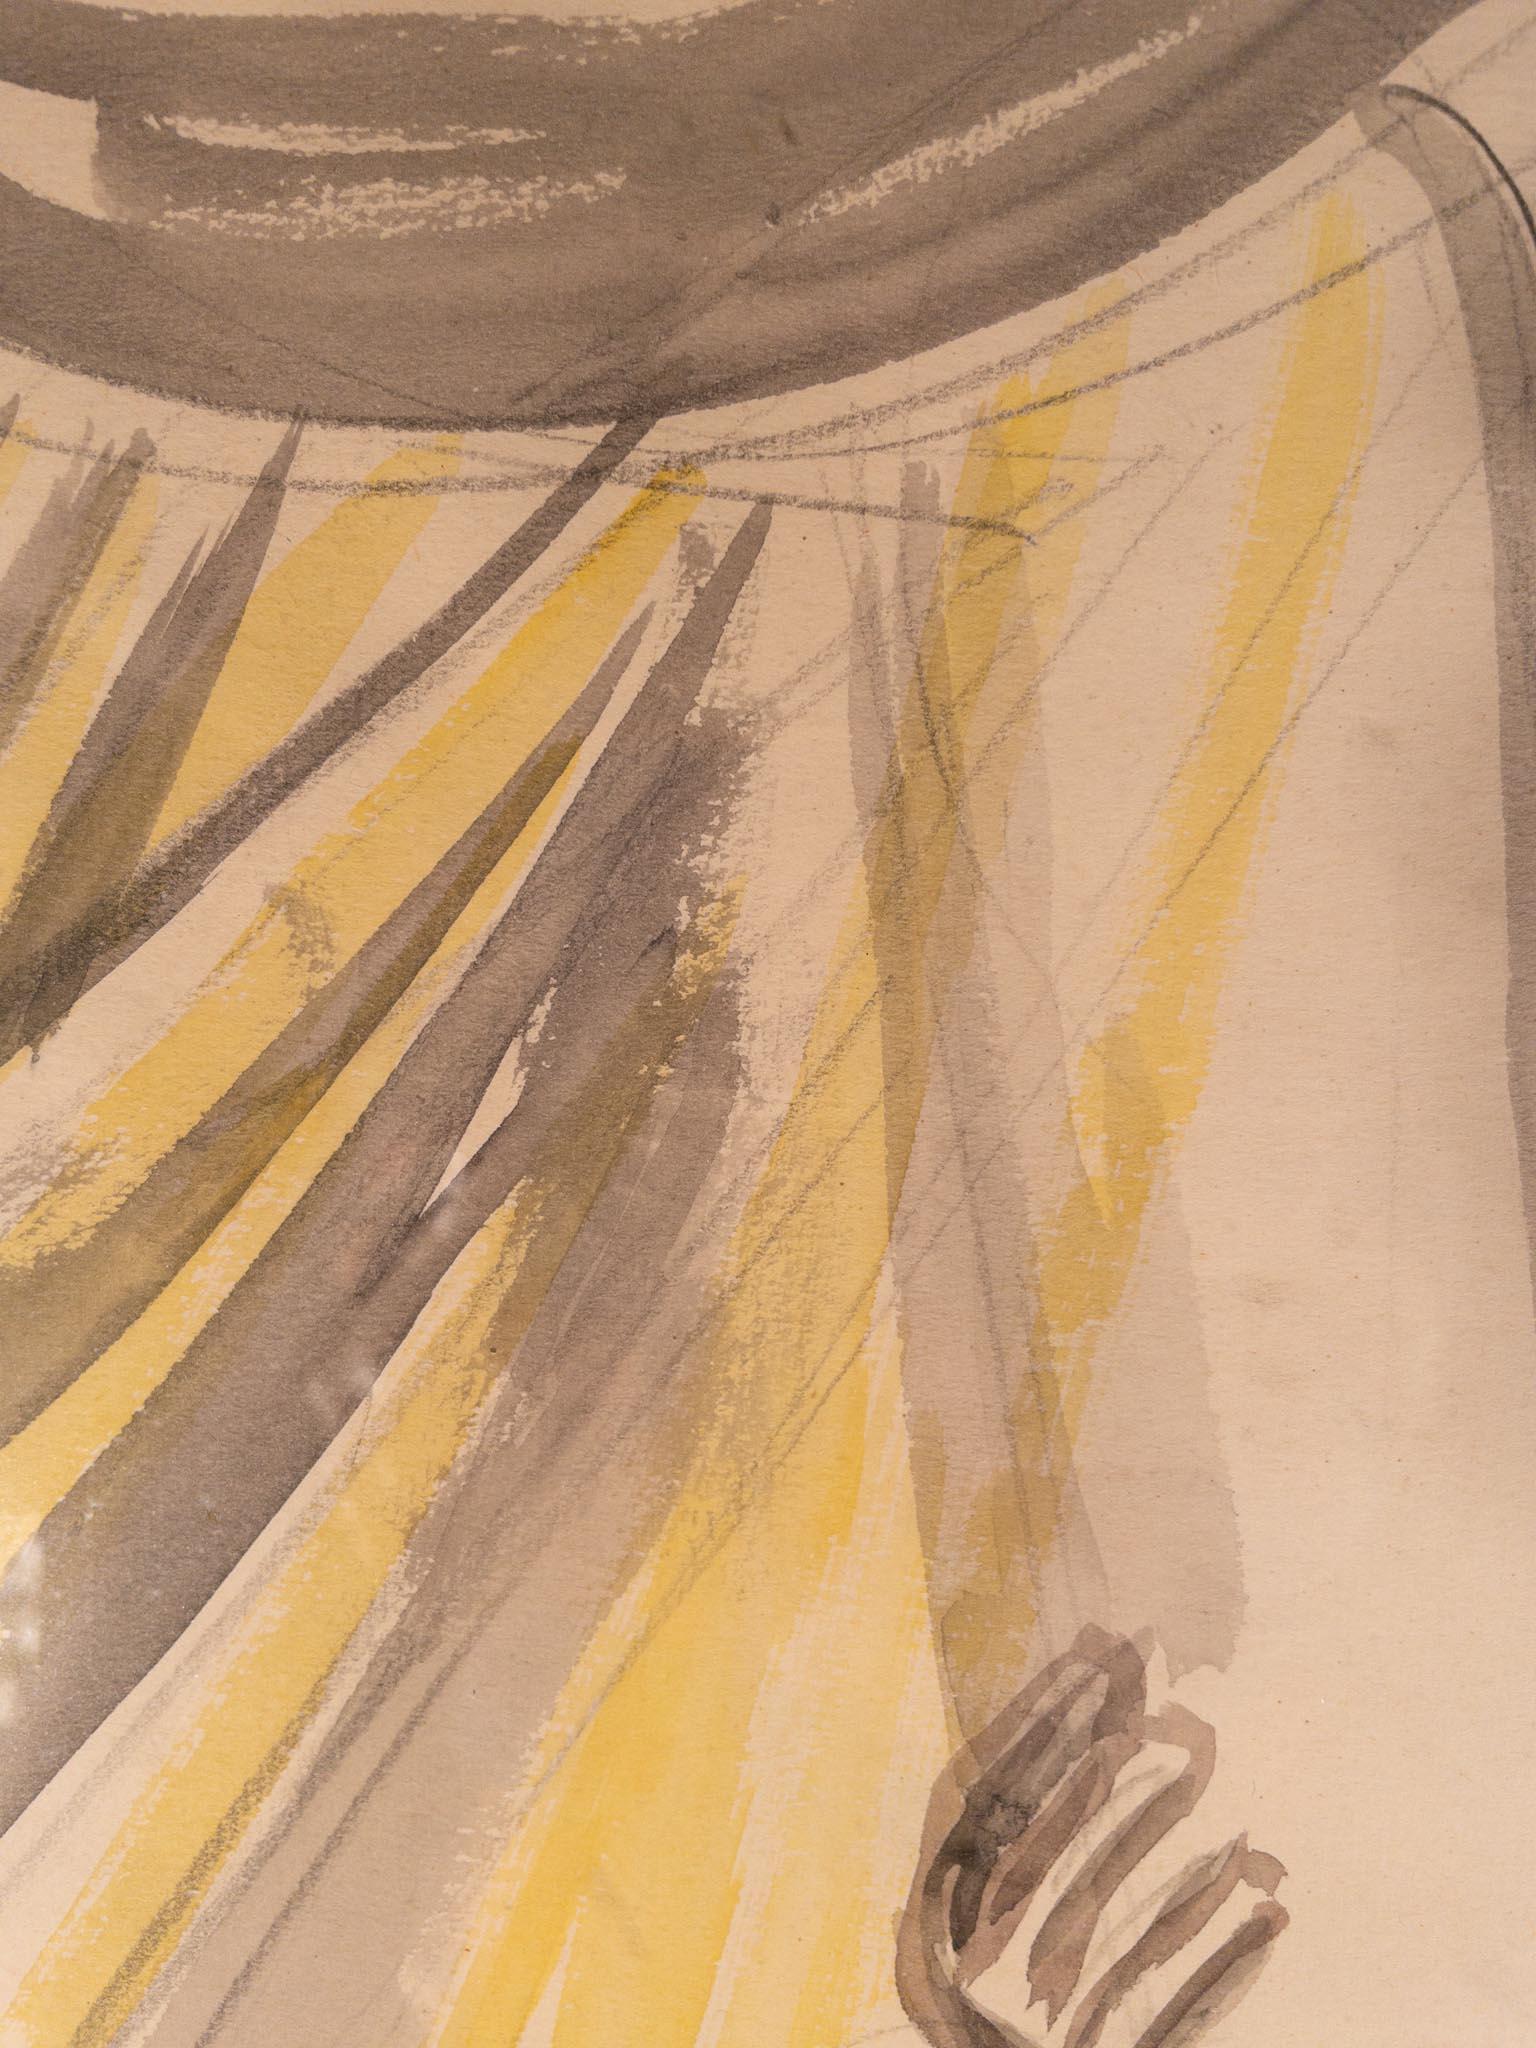 Moïse avec les dix commandements par Sir Jacob Epstein (1880-1959)
Crayon et aquarelle sur papier
22 x 16 ⅝ pouces sans cadre (55,88 x 42,24 cm)
28 ½ x 23 pouces encadré (72,39 x 58,42 cm)
Signé en bas à gauche

Description :
Dans cette aquarelle